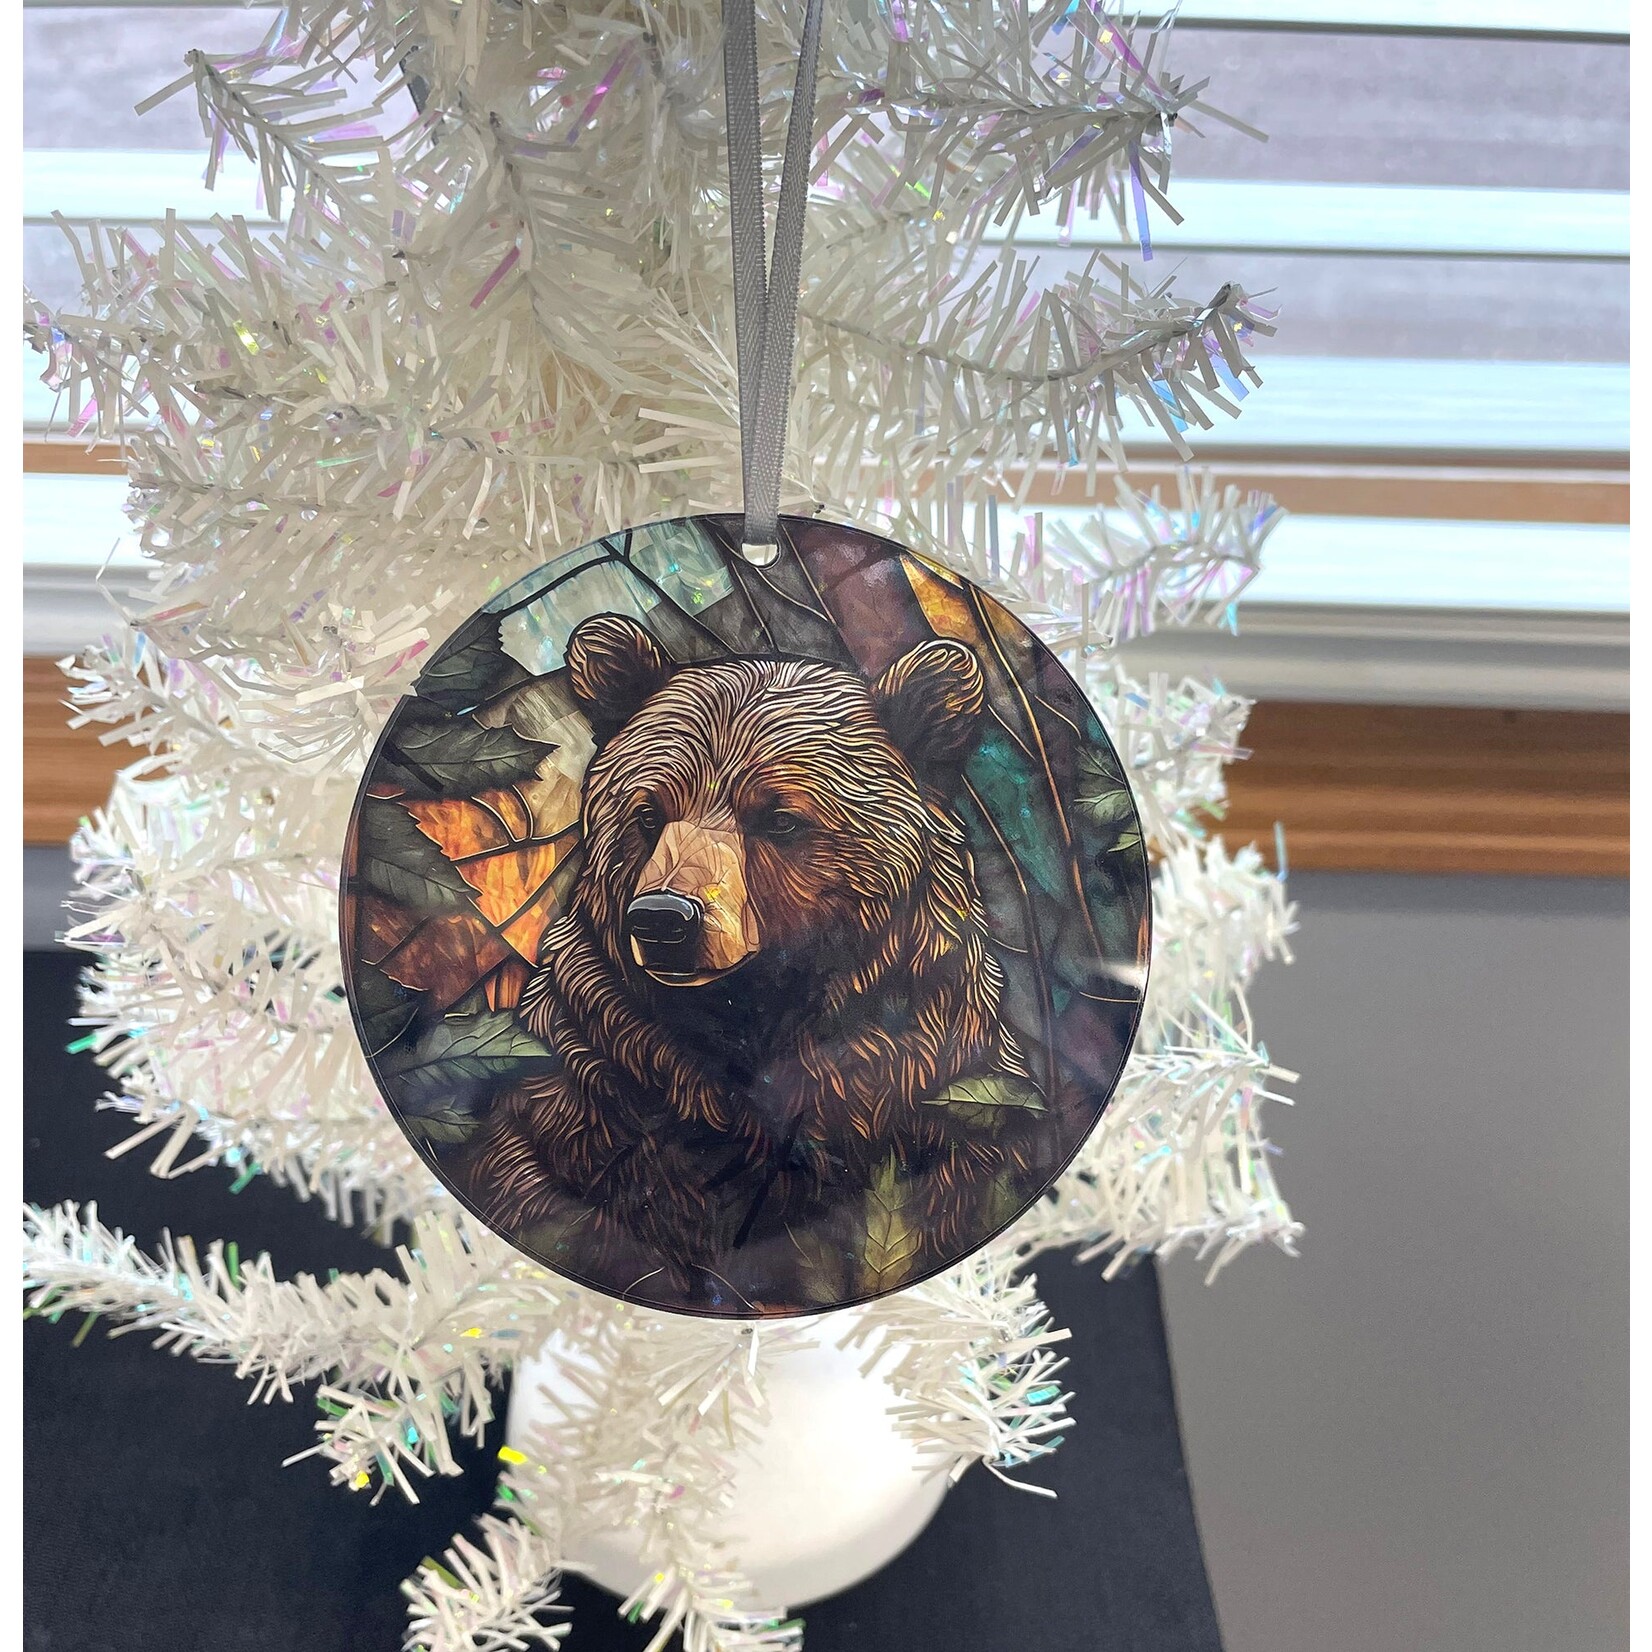 D'ears Acrylic Window Ornament - Brown Bear